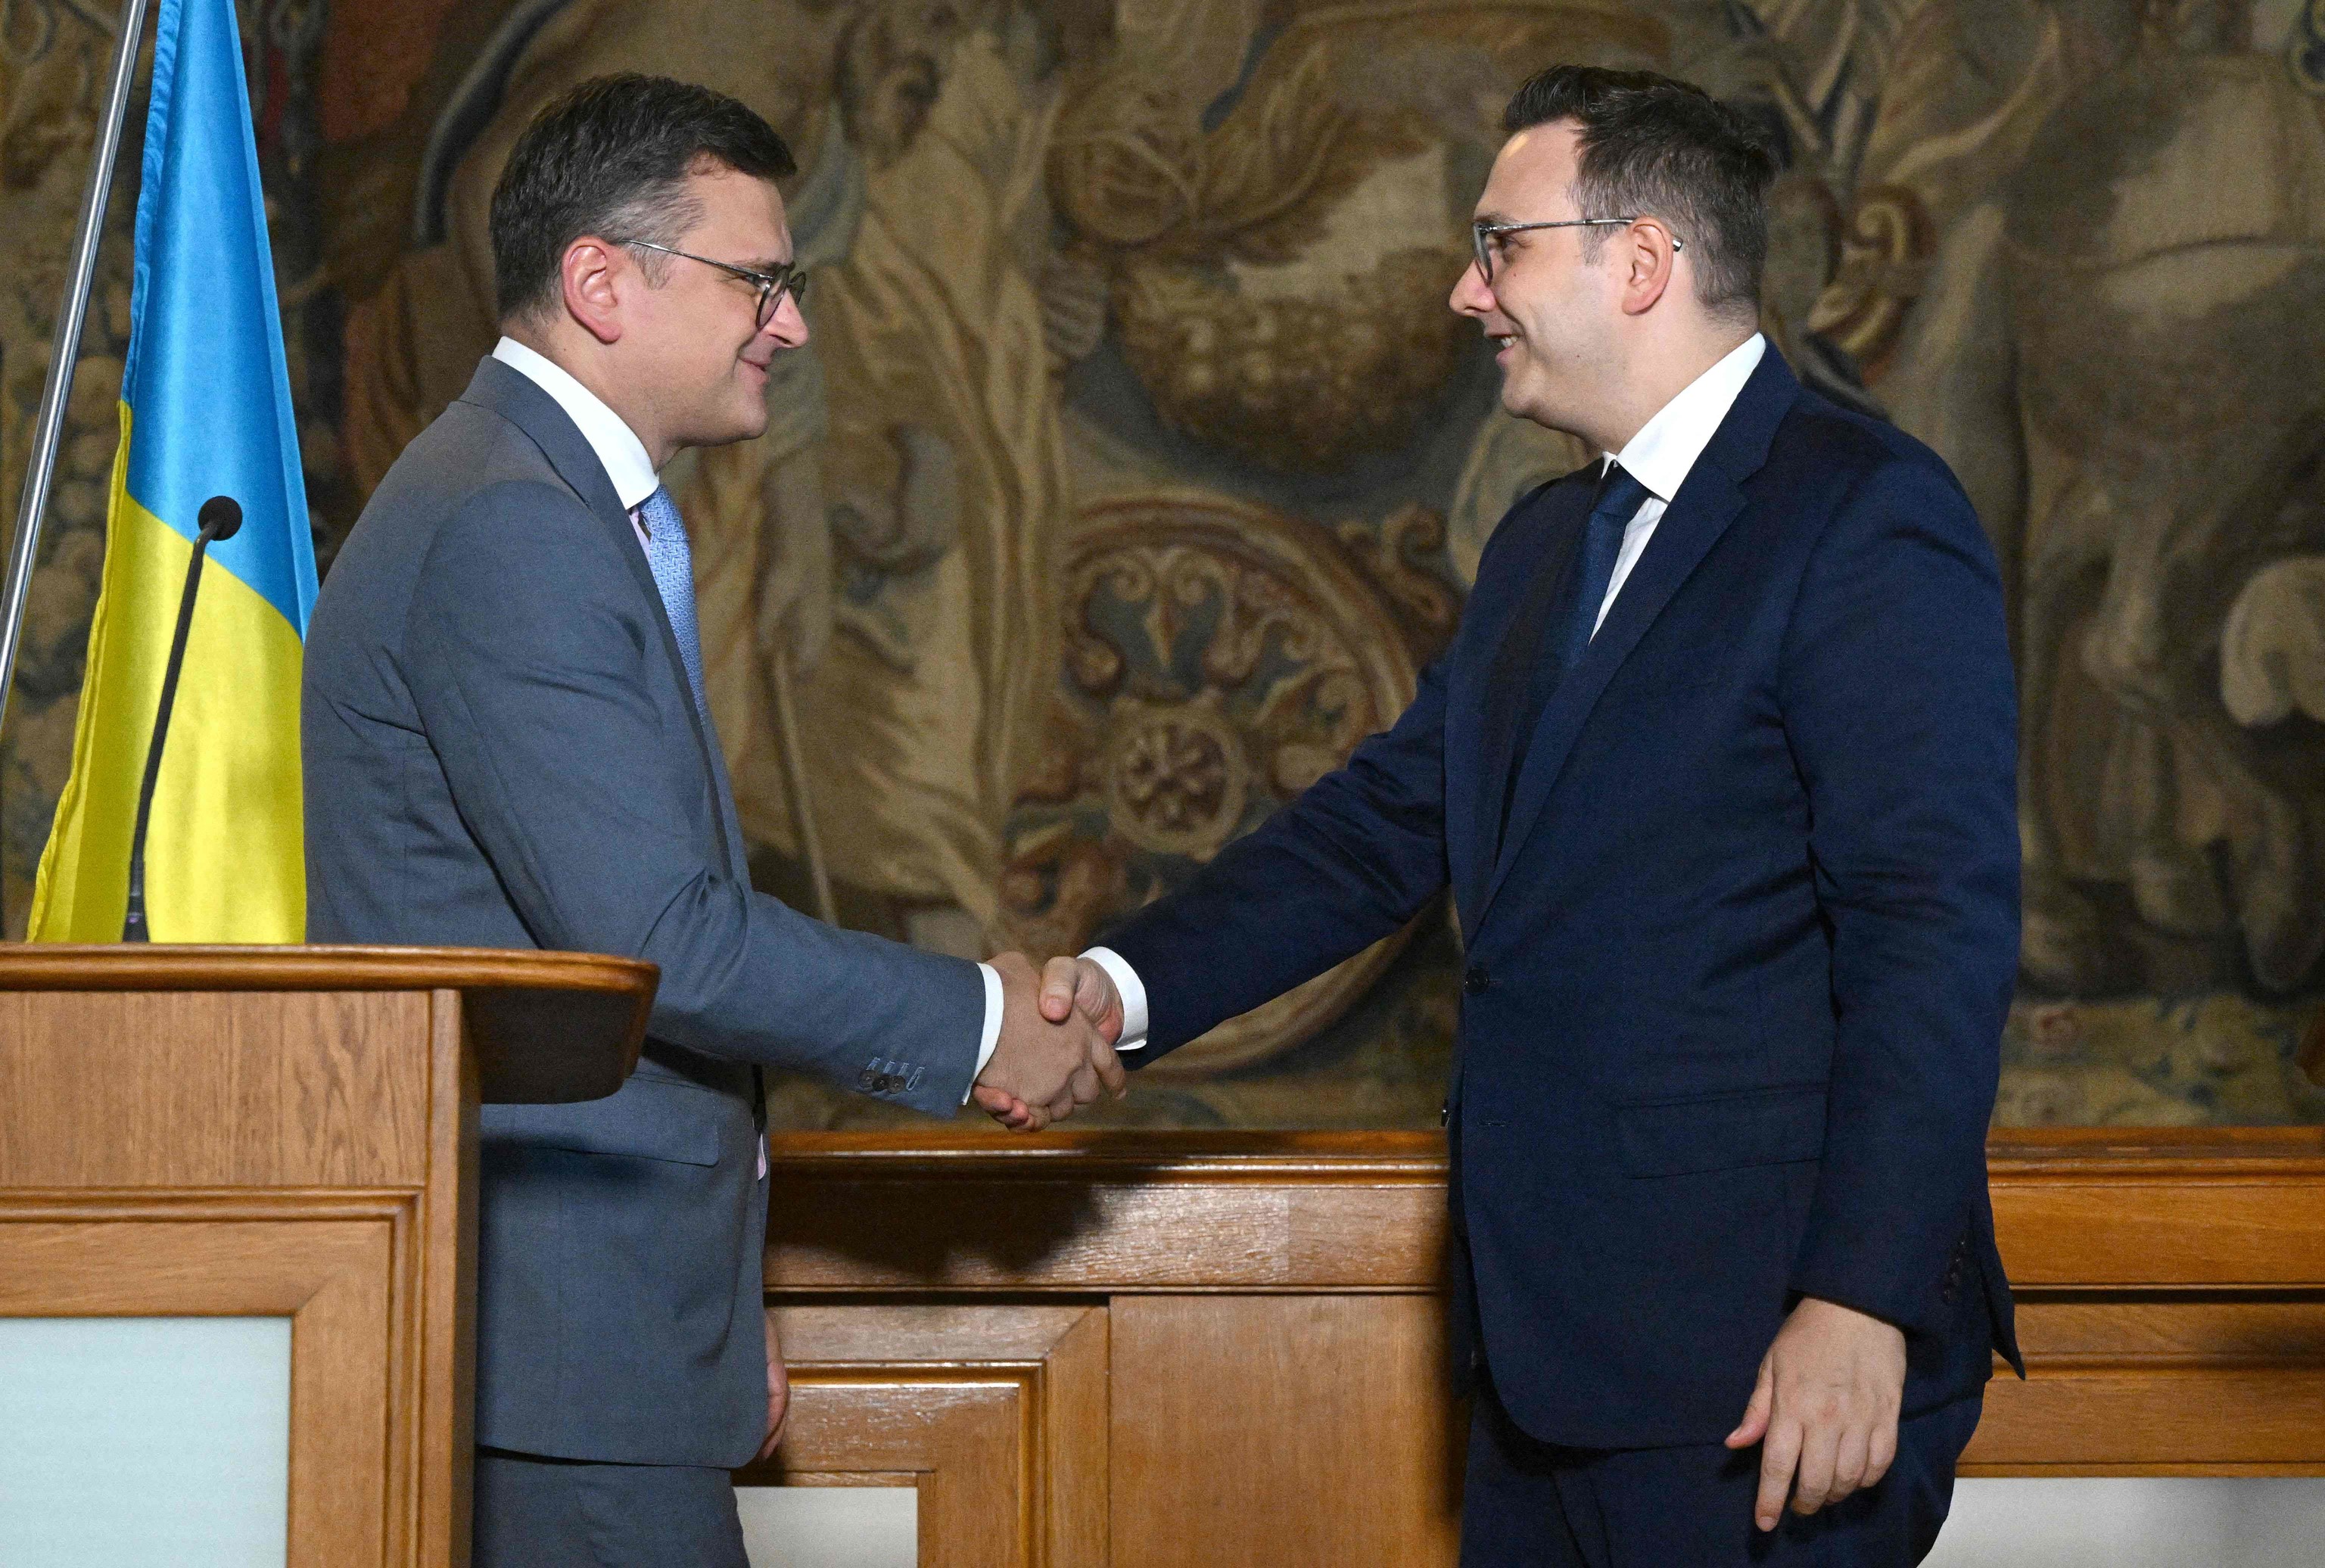 El Ministro de Asuntos Exteriores de la República Checa, Jan Lipavsky (derecha), estrecha la mano de su homólogo ucraniano, Dmytro Kuleba, después de su conferencia de prensa el 28 de agosto de 2023 en Praga, República Checa. (Foto de Michal Cizek / AFP)